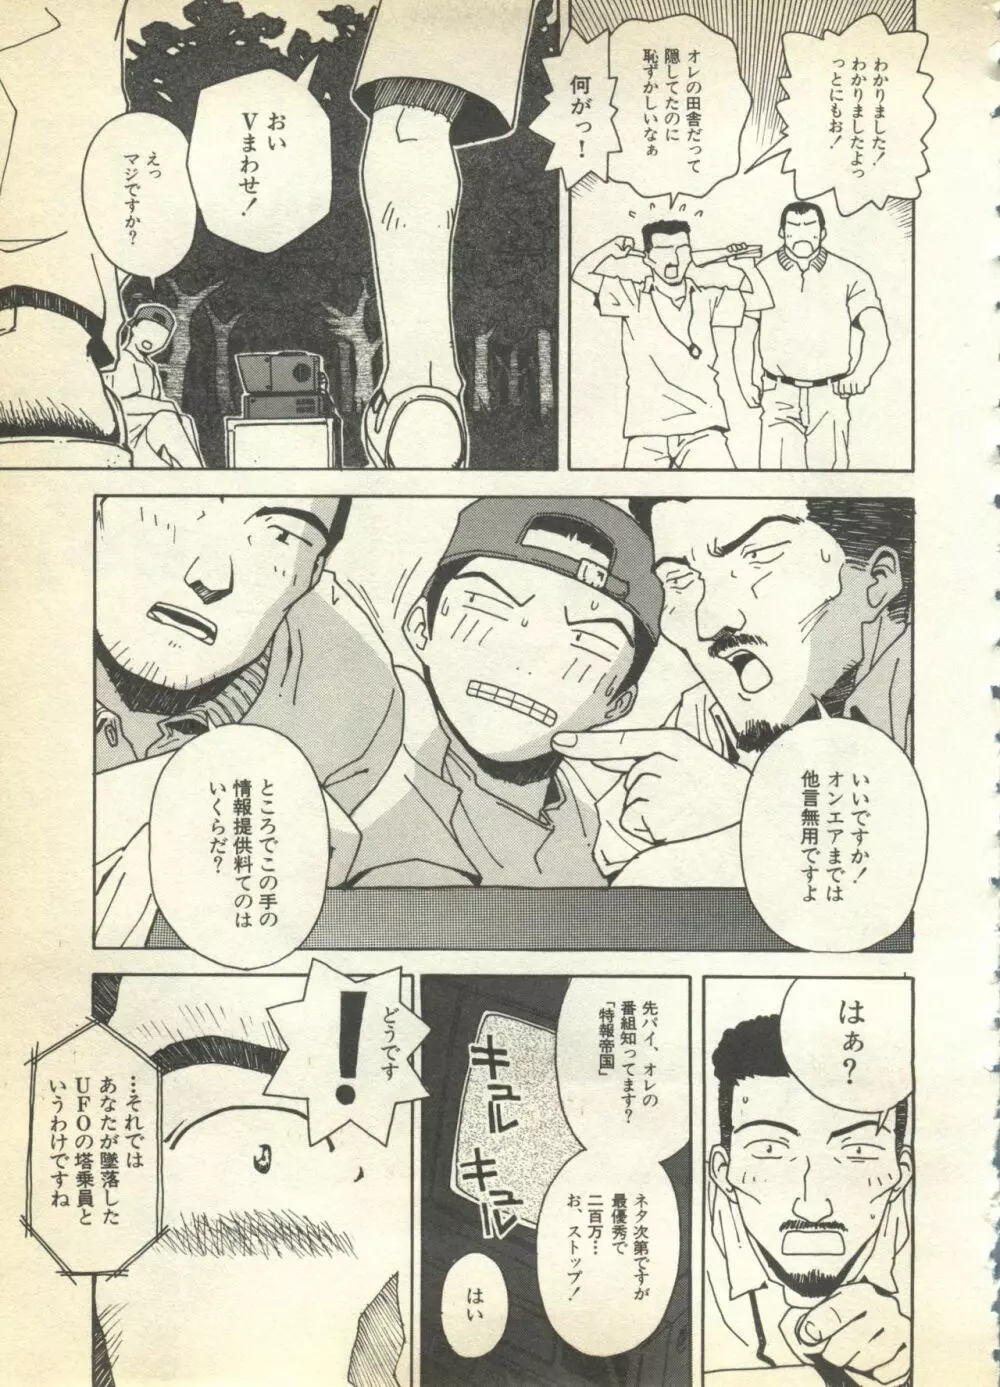 パイク Pai.kuu 1997 Dec 七 79ページ